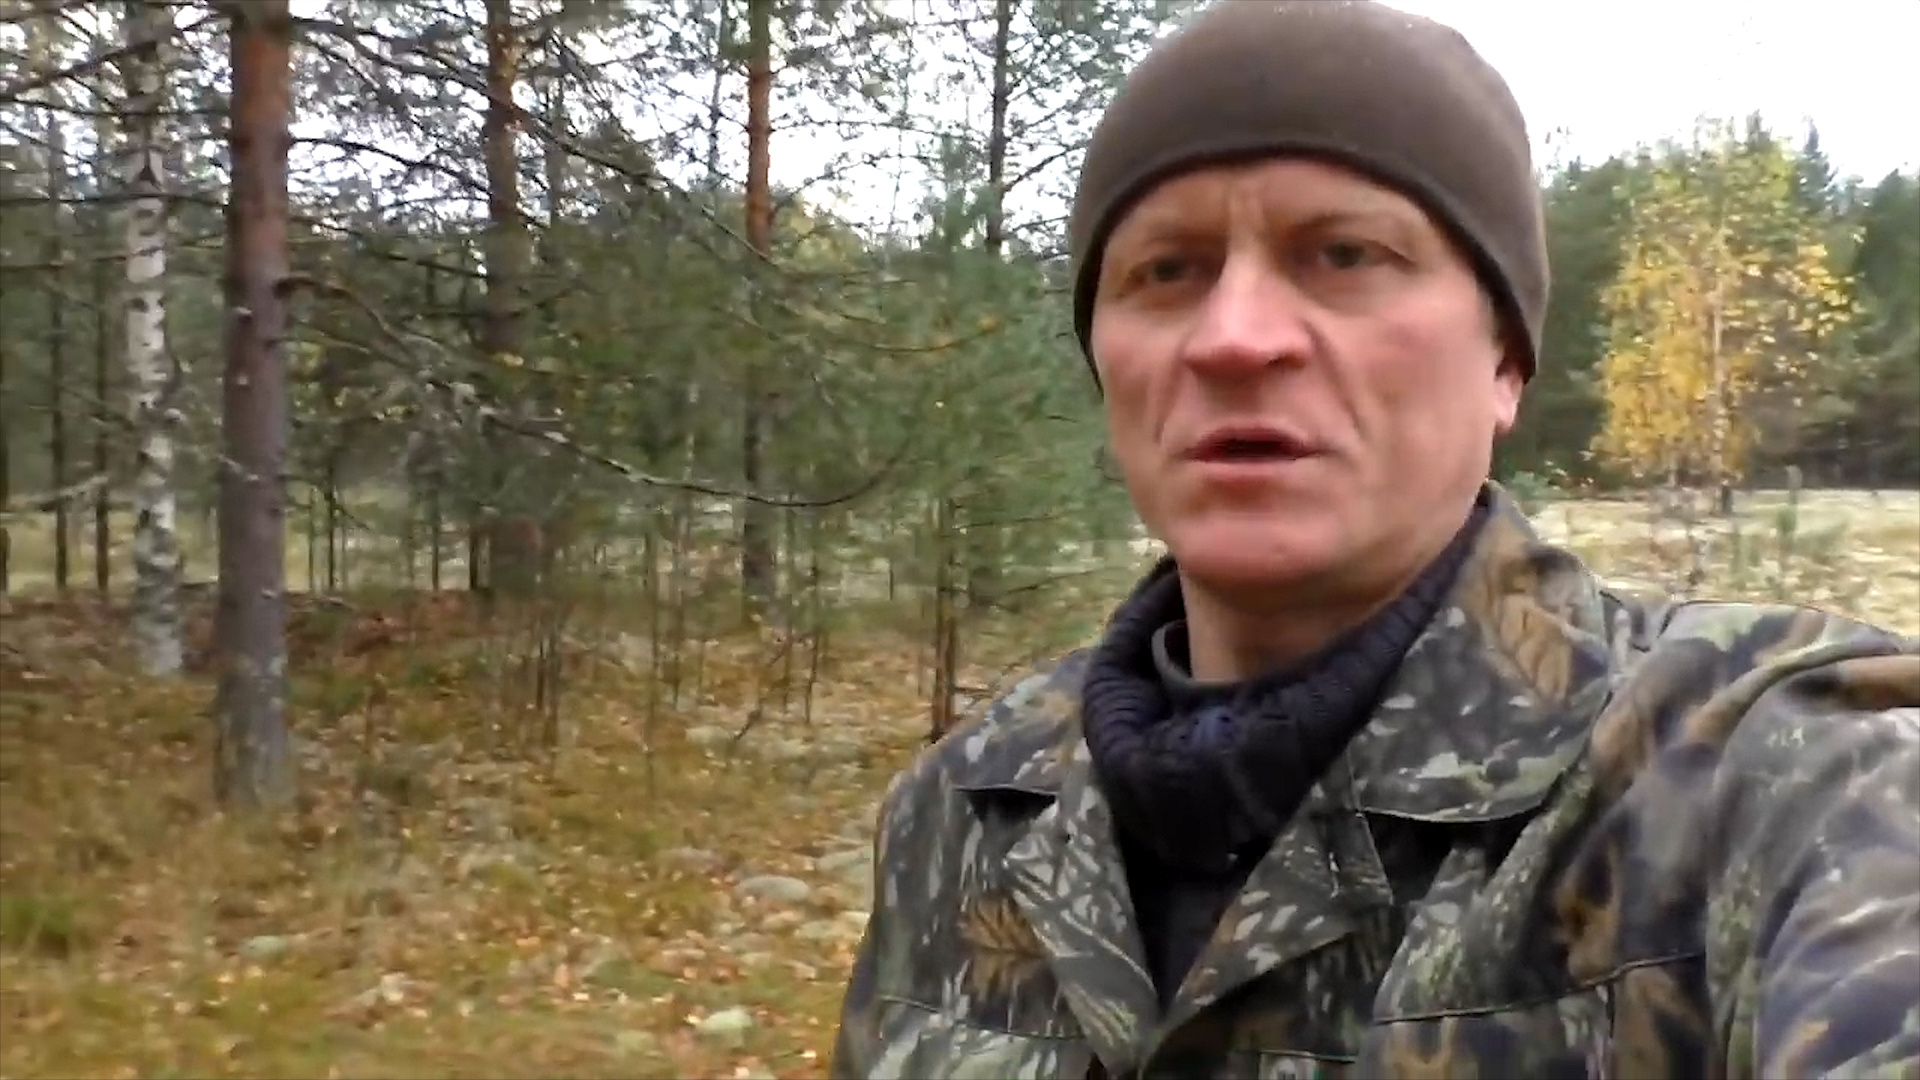 Александр Обливин ведёт свой видеоблог про лесозаготовку в Красновишерском районе